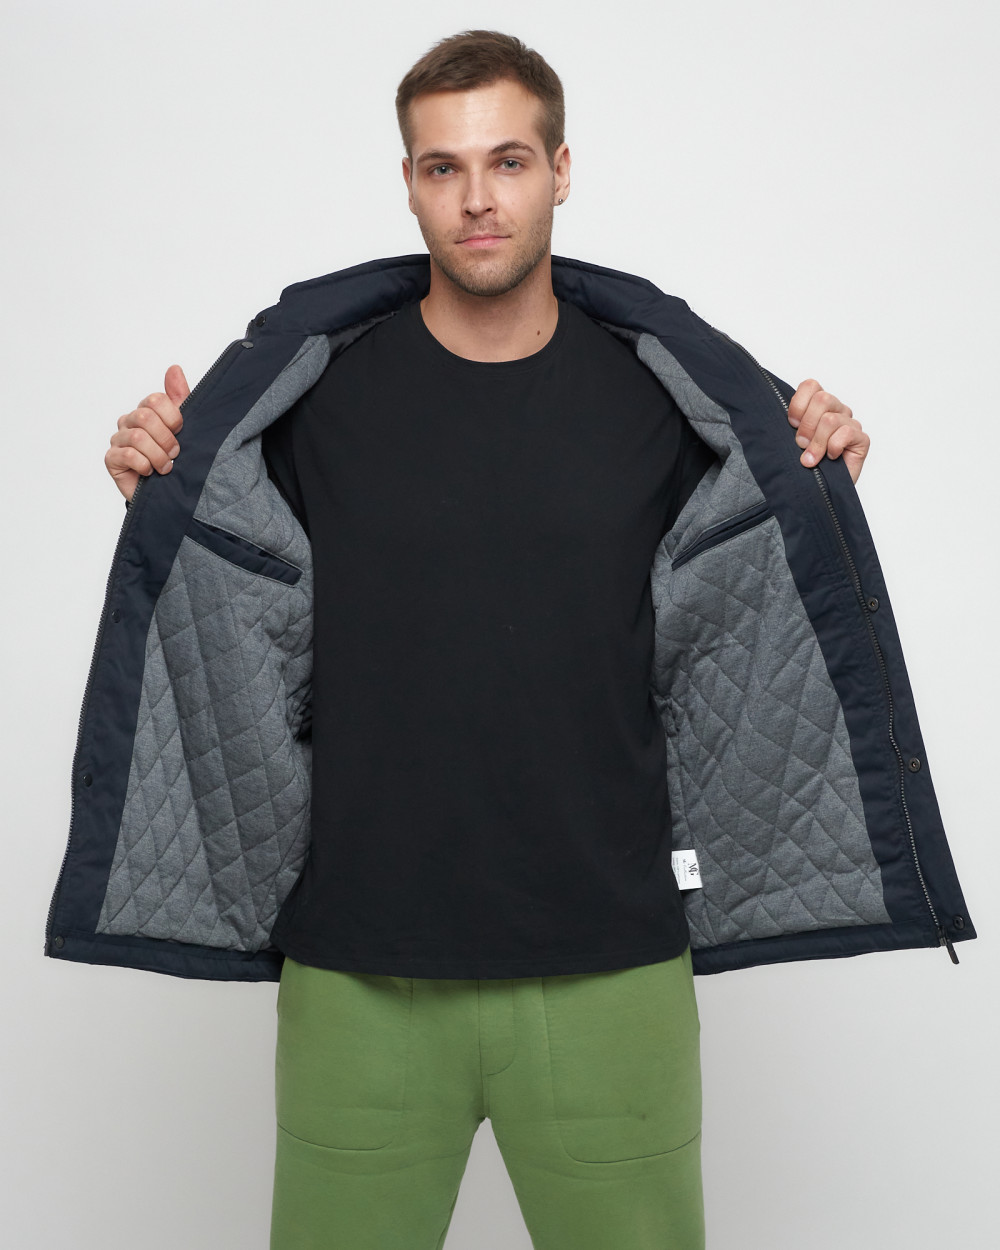 Купить куртку мужскую спортивную весеннюю оптом от производителя недорого в Москве 8598TS 1